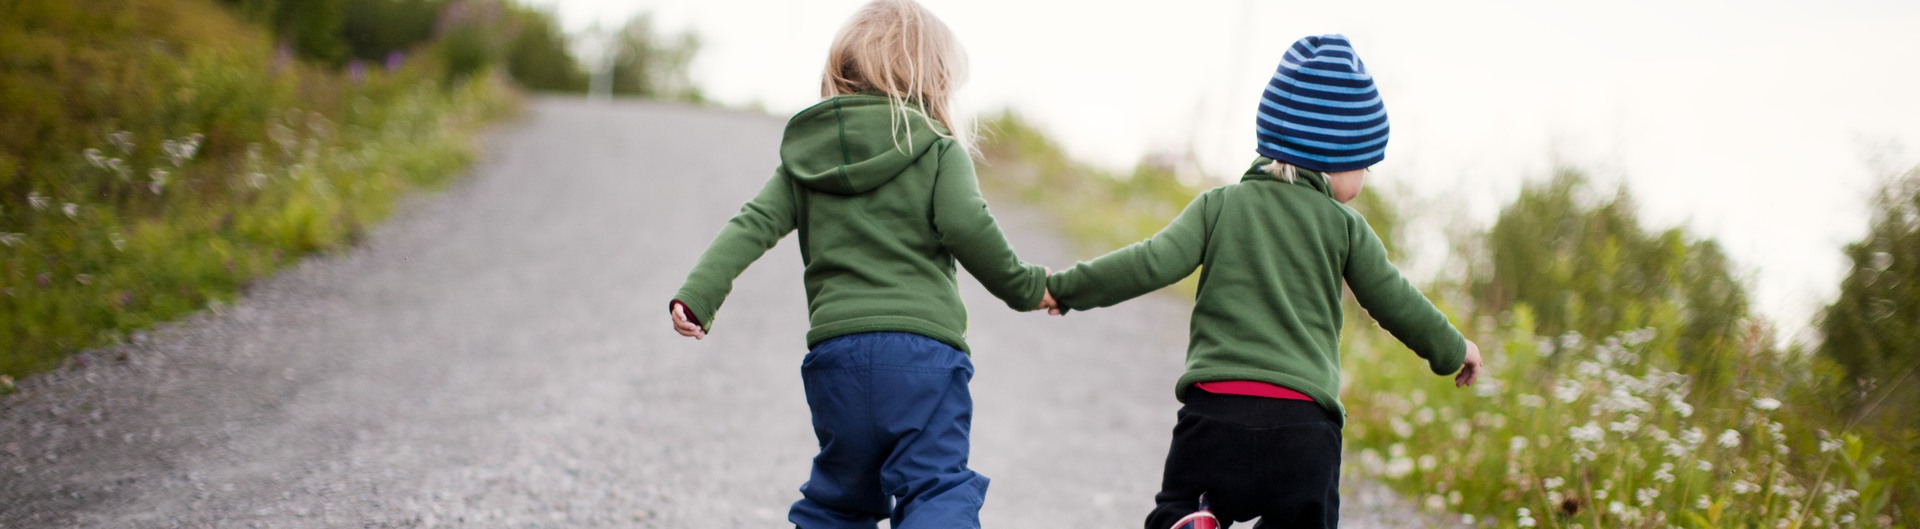 Två barn som håller varandra i händerna.